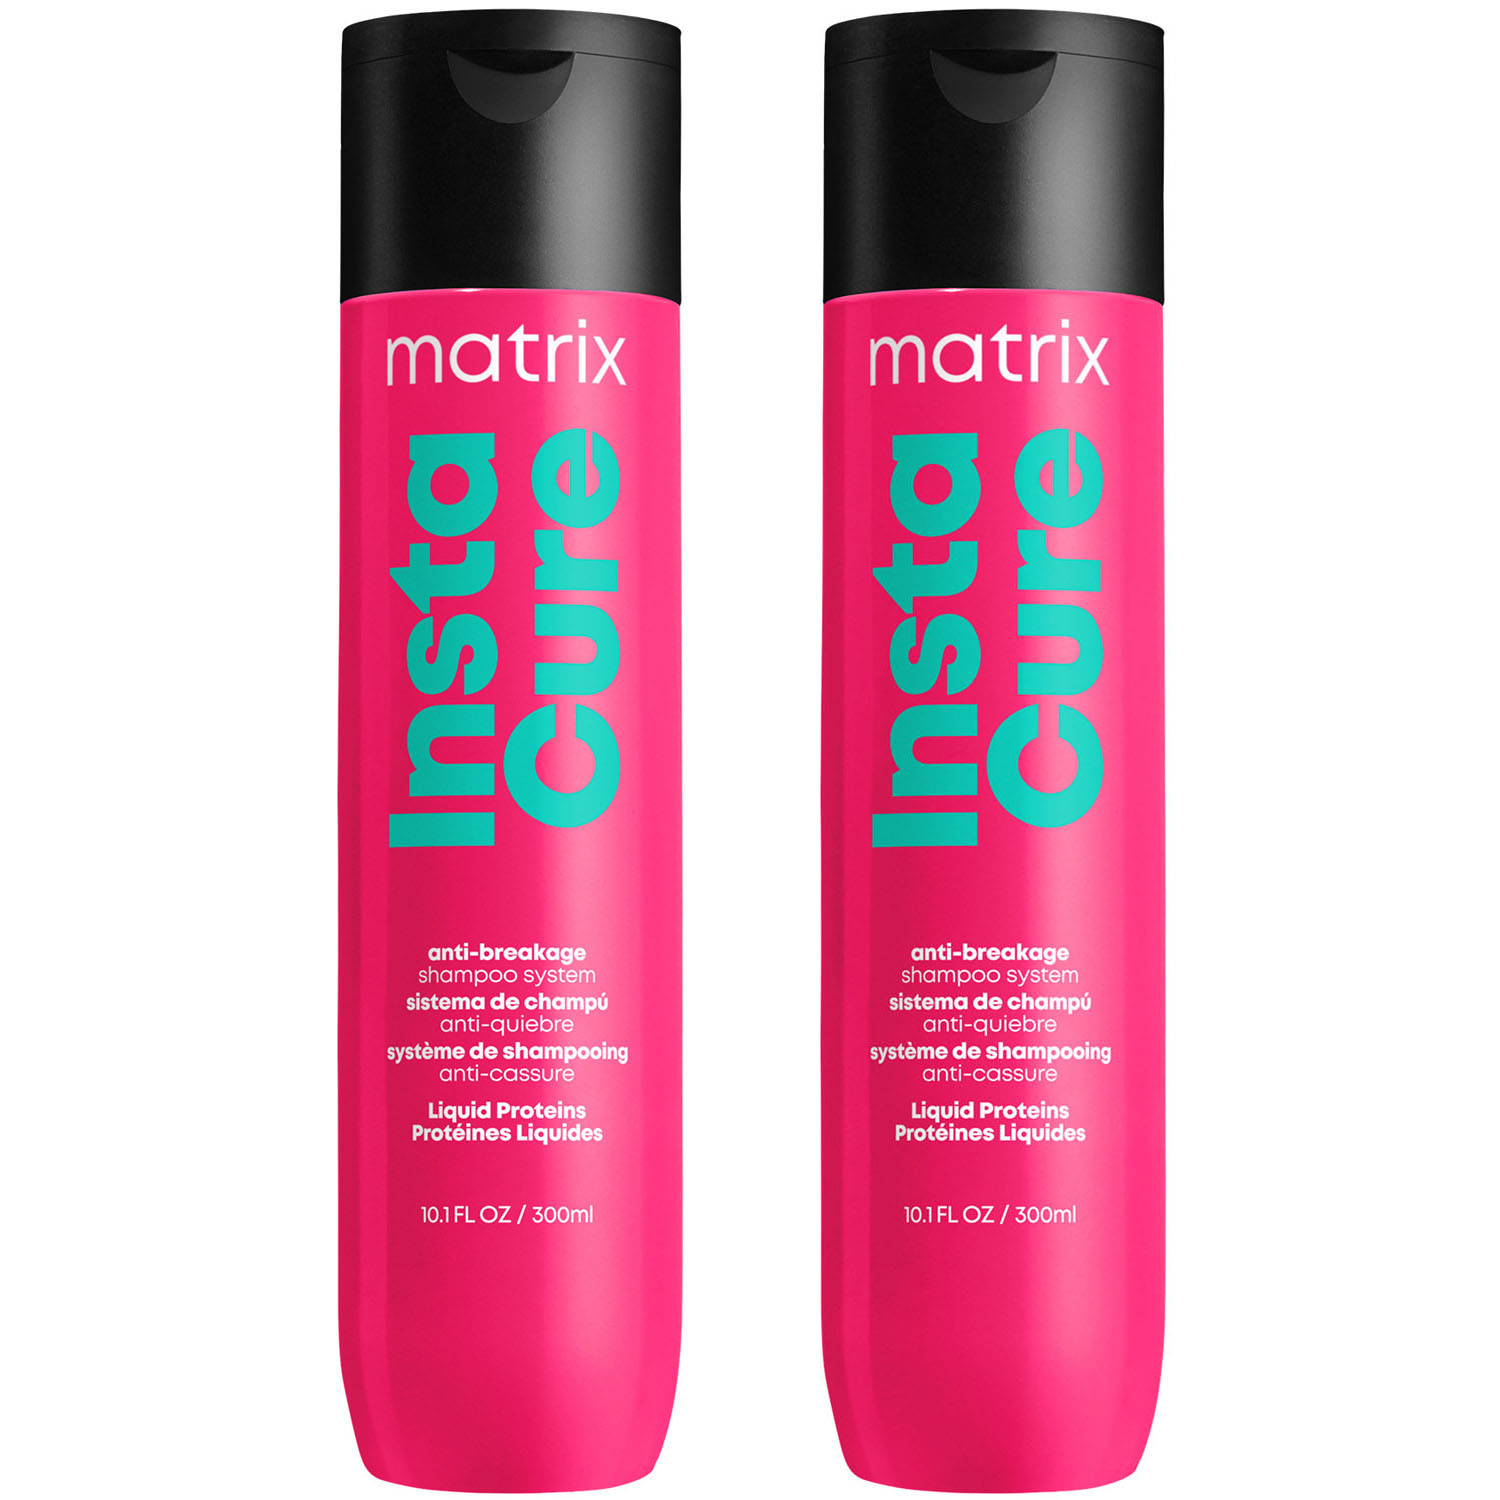 Matrix Профессиональный шампунь Instacure для восстановления волос с жидким протеином, 300 мл х 2 шт (Matrix, Total Results)